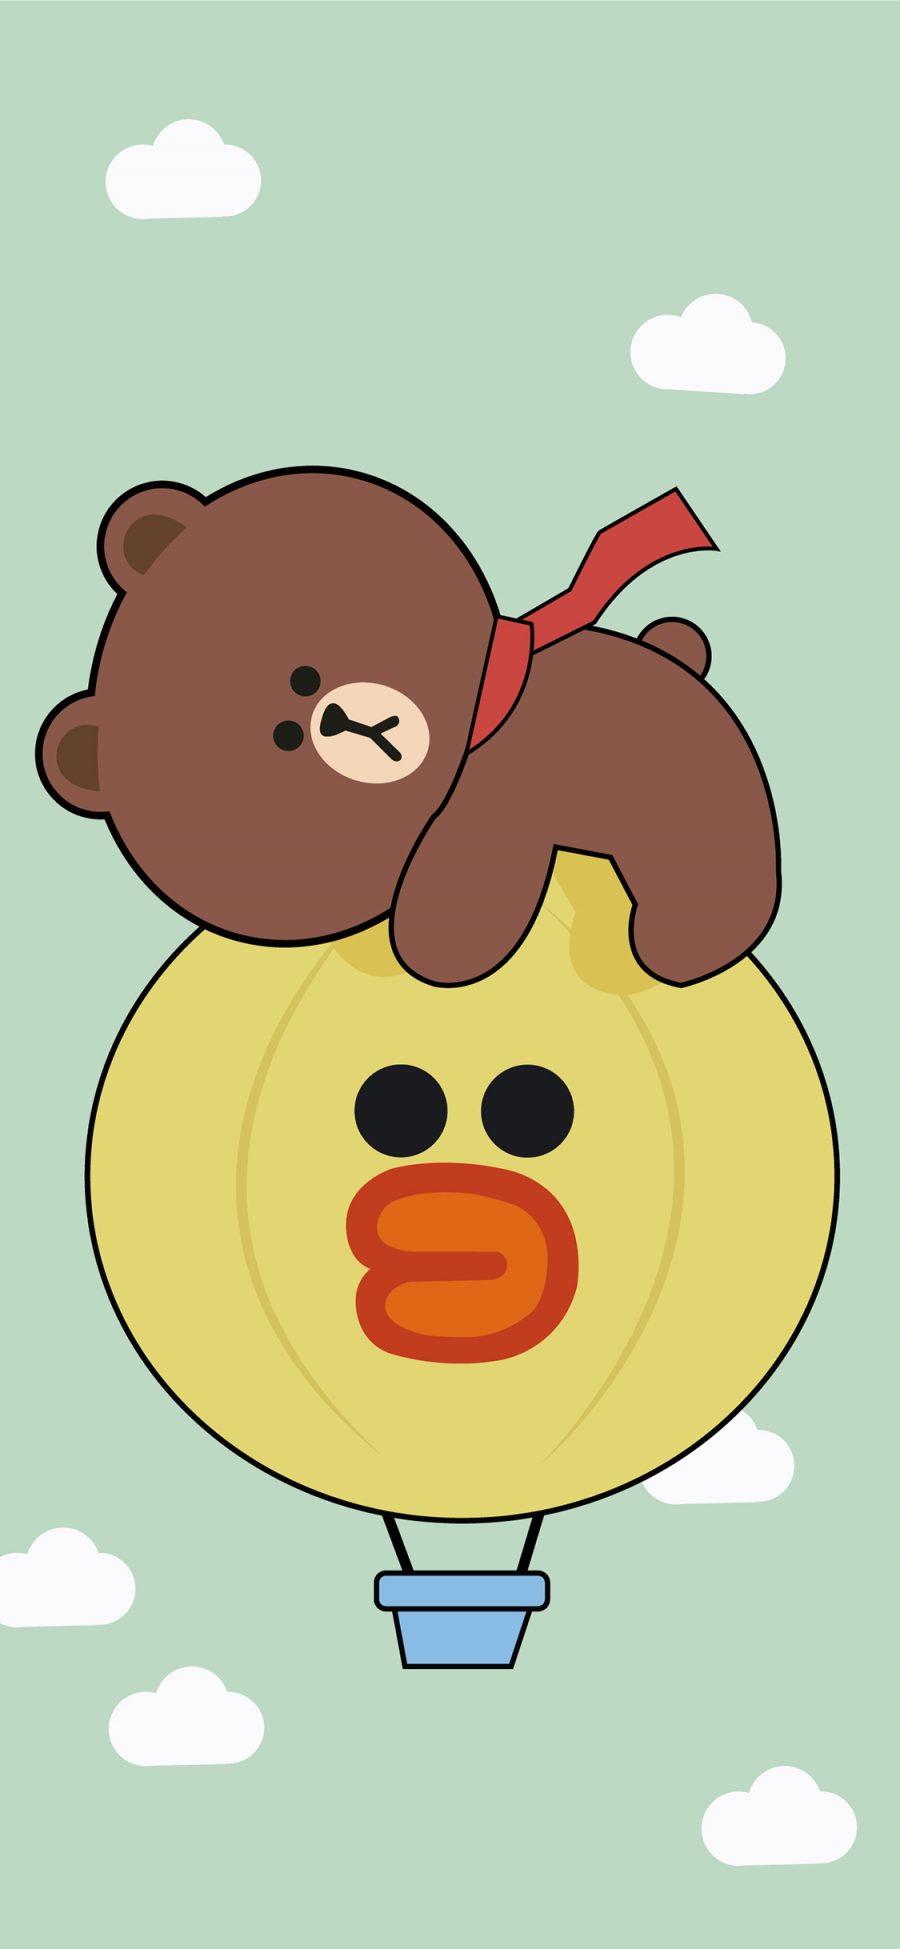 [2436×1125]布朗熊 萨莉鸡 热气球 linefriends 卡通 苹果手机动漫壁纸图片